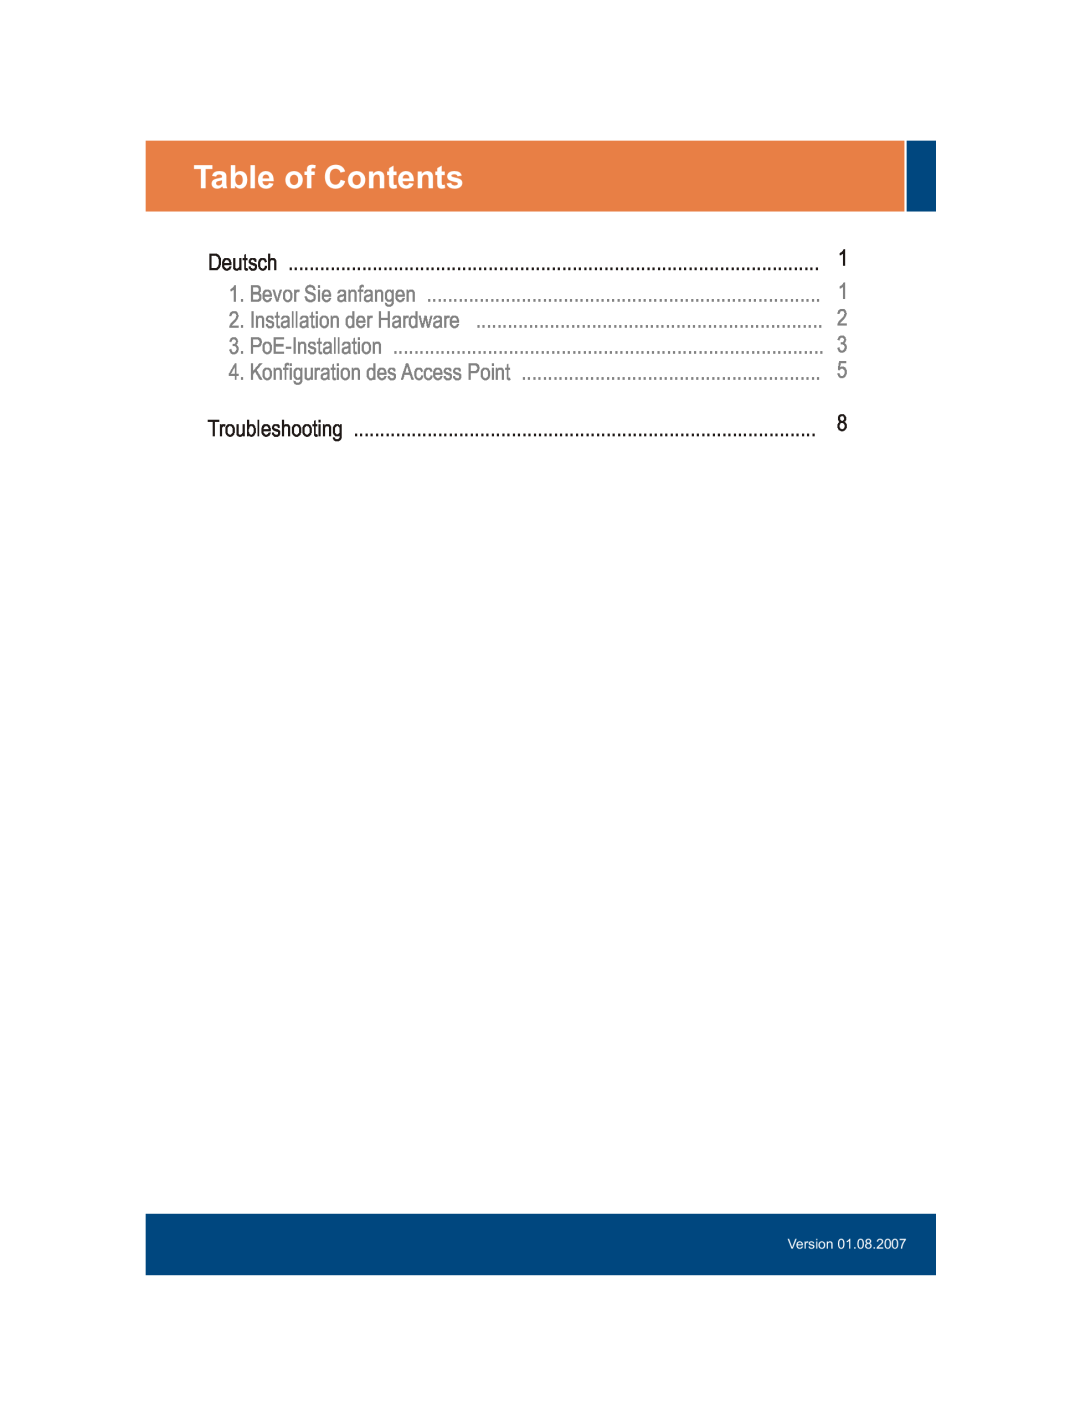 TRENDnet TEW-434APB manual Table of Contents, Bevor Sie anfangen, Installation der Hardware, PoE-Installation, Version 